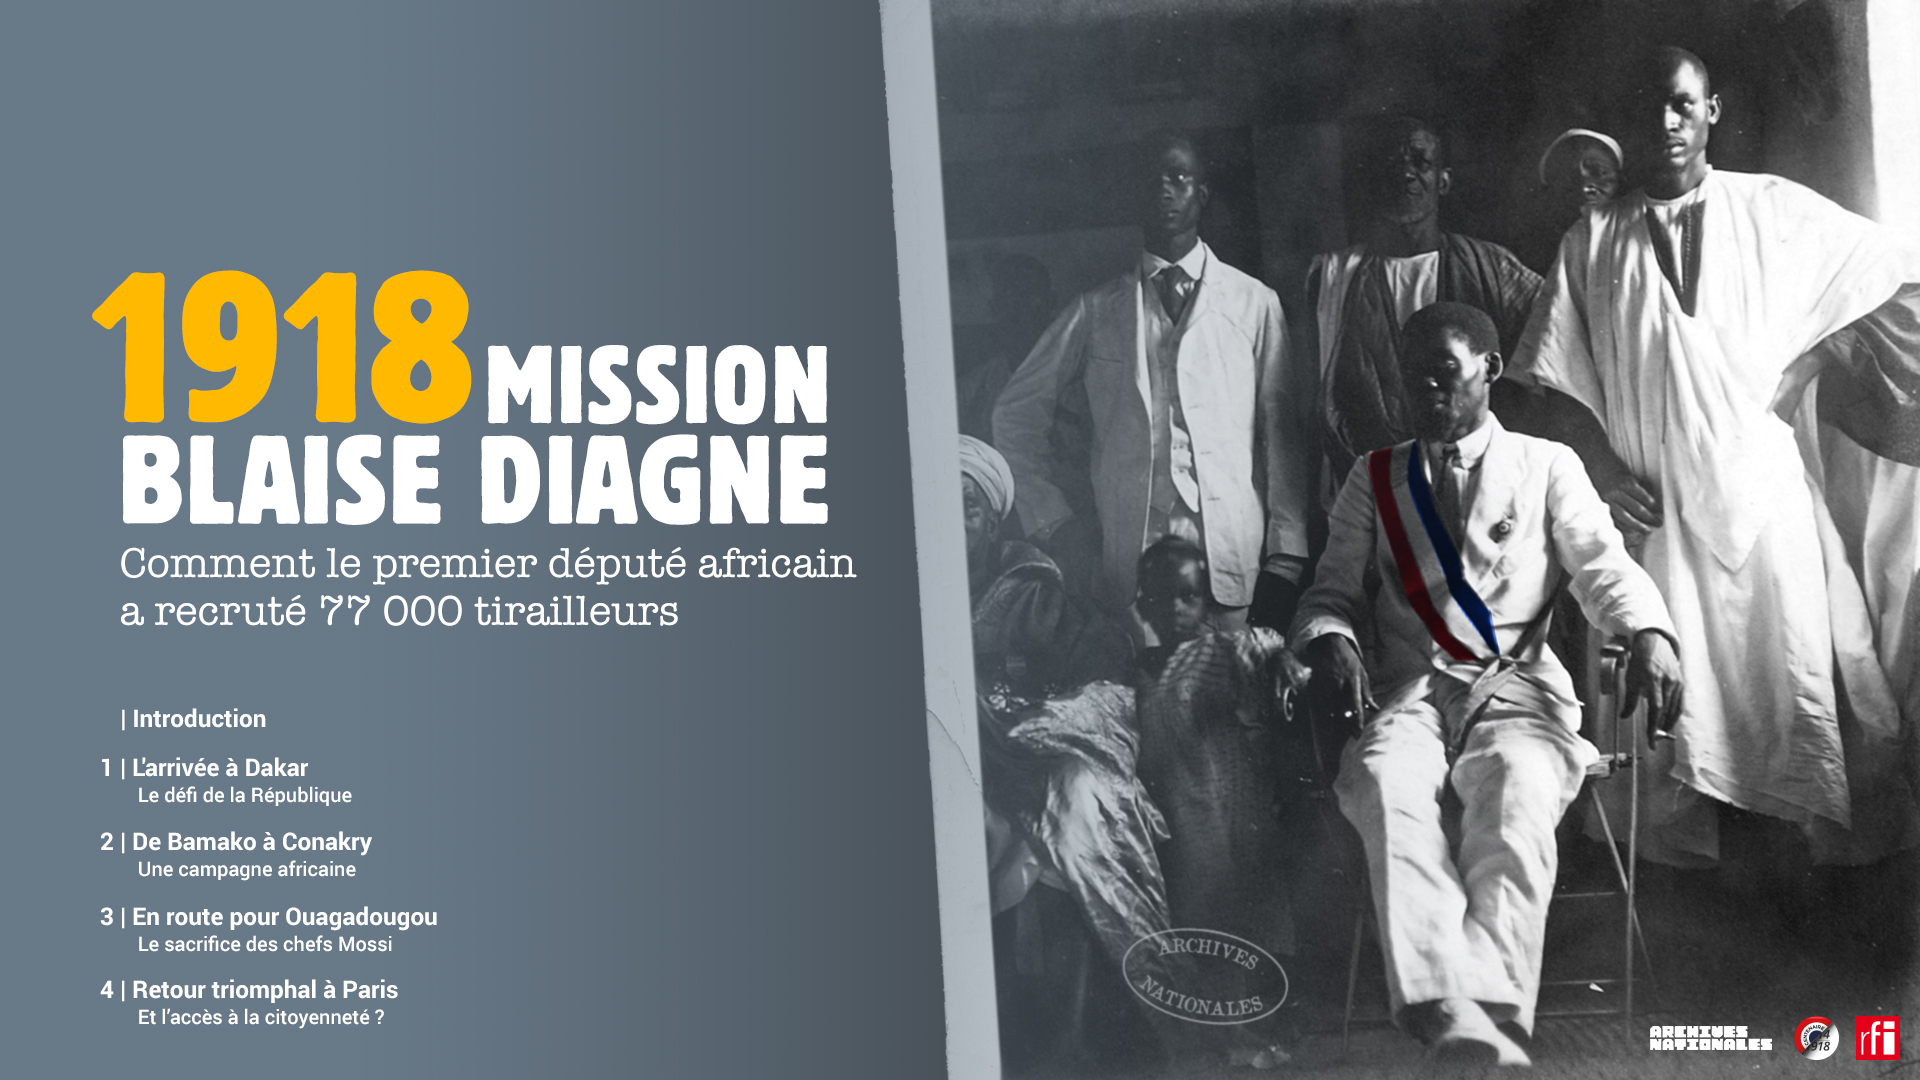 Un partenariat Archives nationales-Radio France Internationale autour de la mission Blaise Diagne